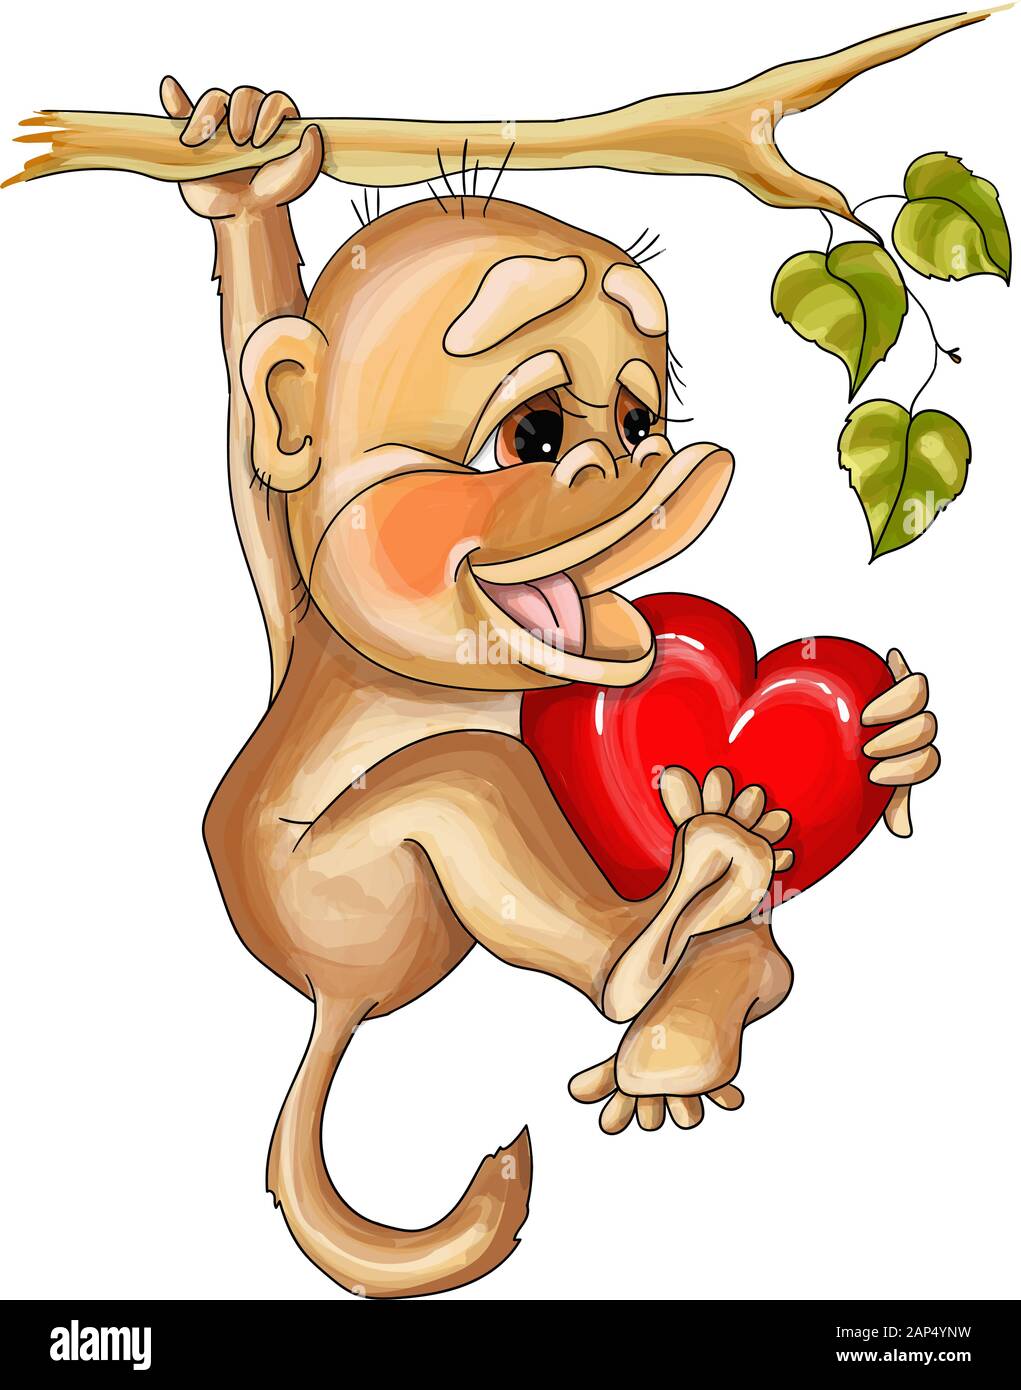 Valentine illustration vectorielle dans l'amour de singe accroché sur une branche Illustration de Vecteur